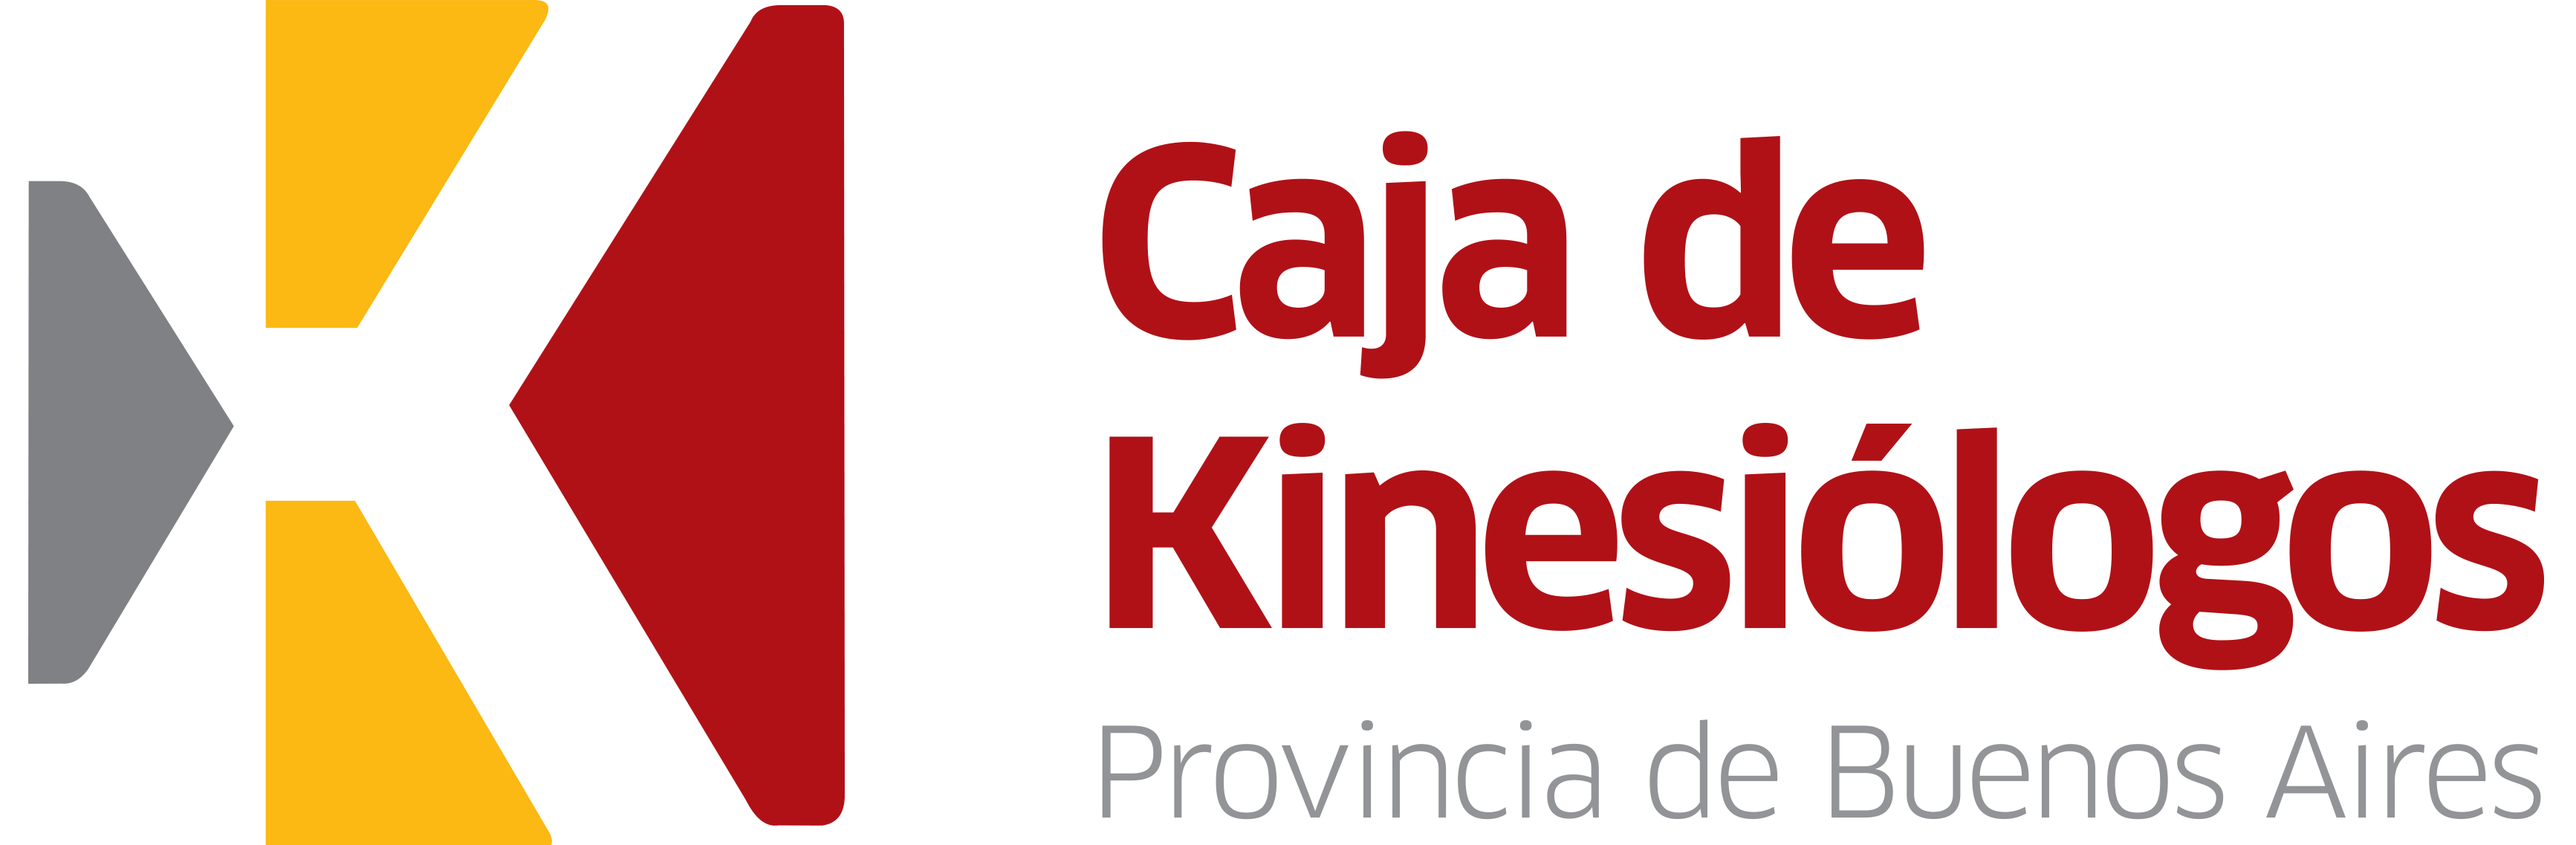 Caja de Kinesiólogos de la Provincia de Buenos Aires